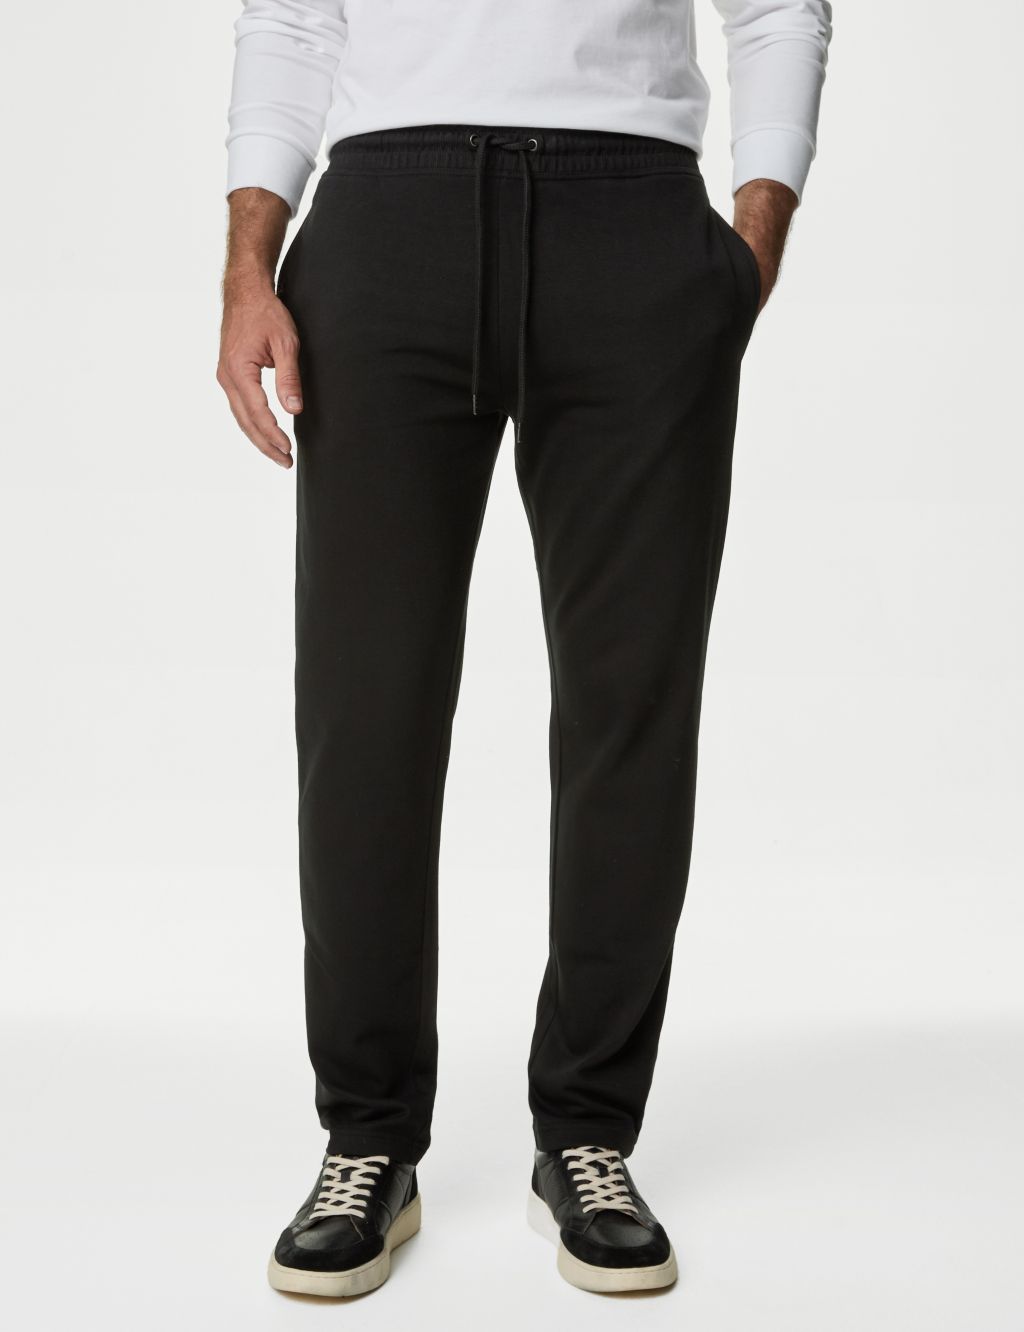 Men's Casual Drawstring Black Sweatpants